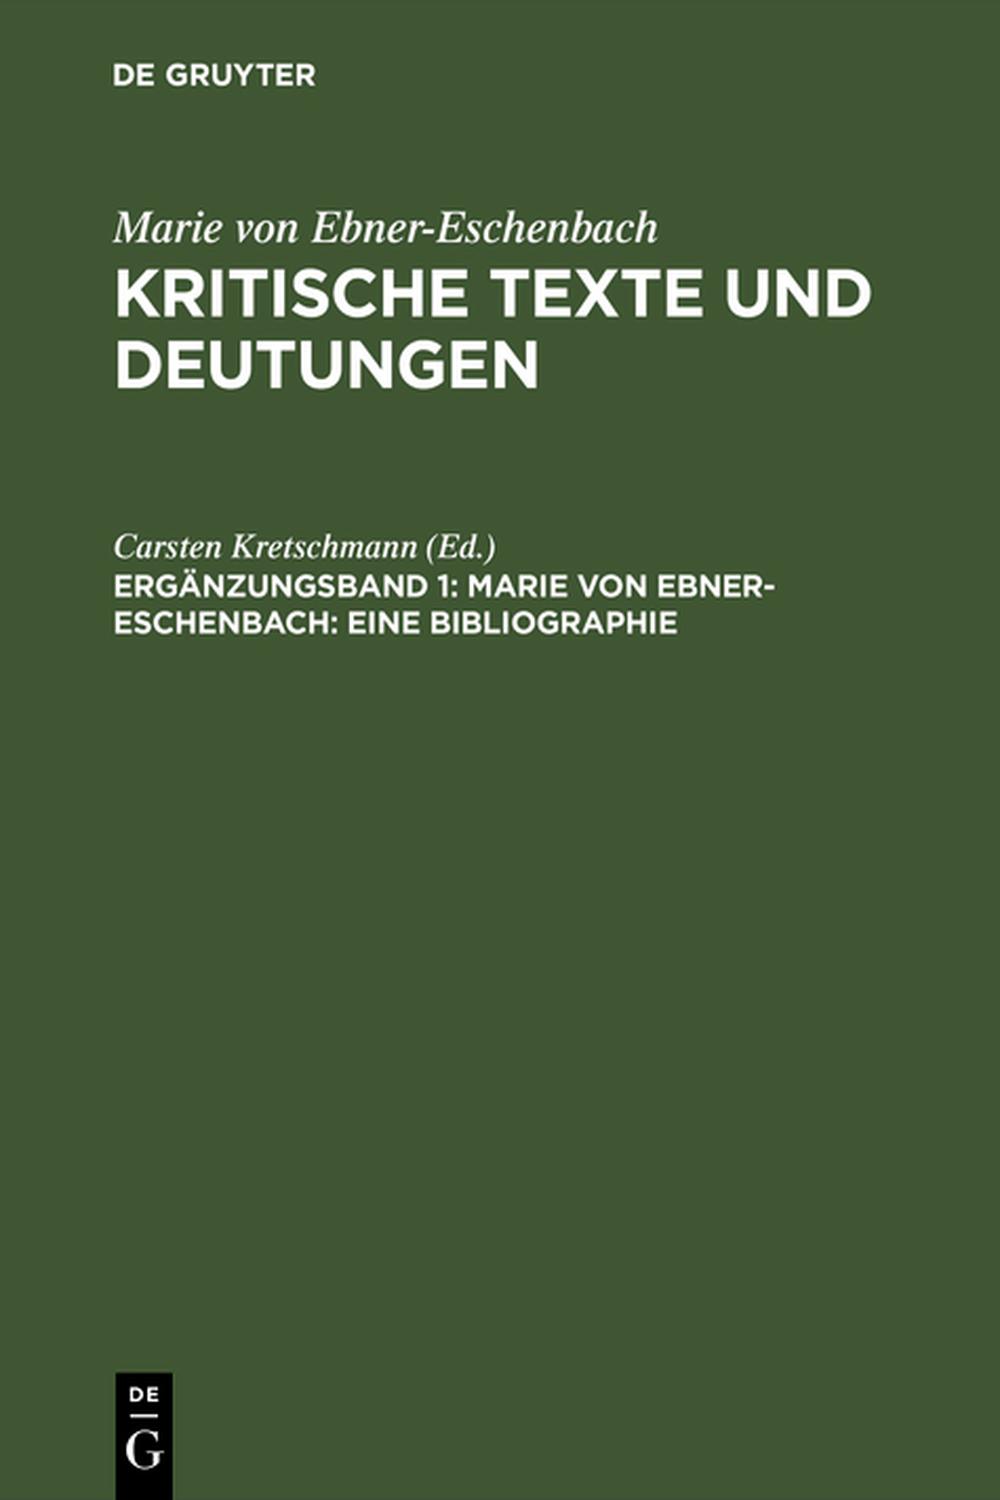 Marie von Ebner-Eschenbach: Eine Bibliographie - Carsten Kretschmann